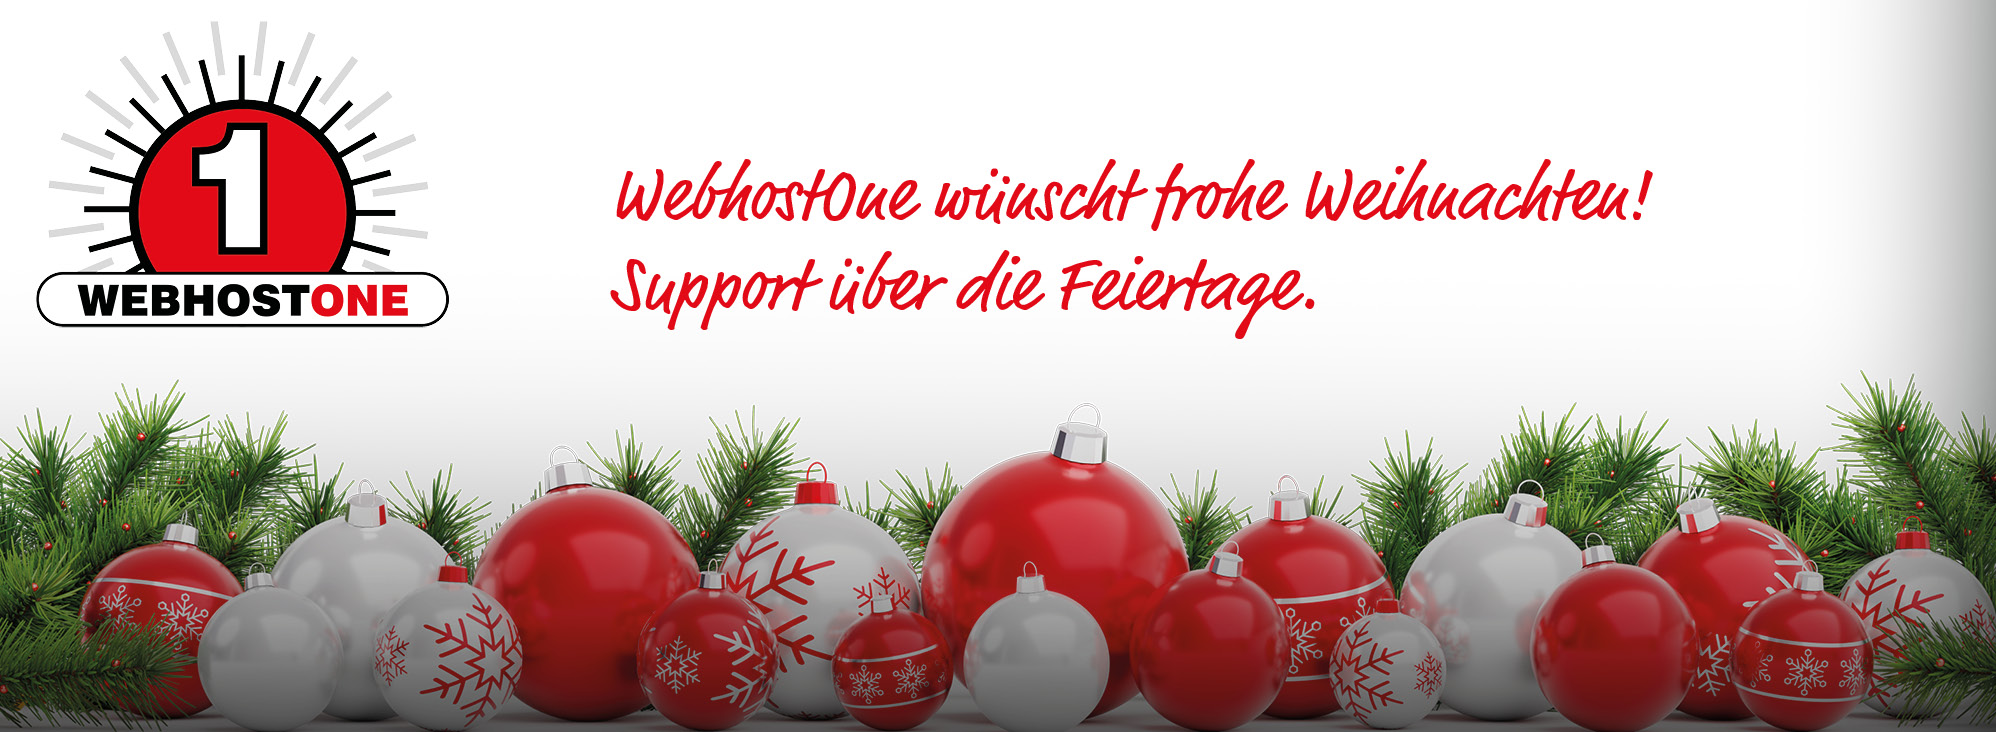 WebhostOne wünscht frohe Weihnachten! Support über die Feiertage